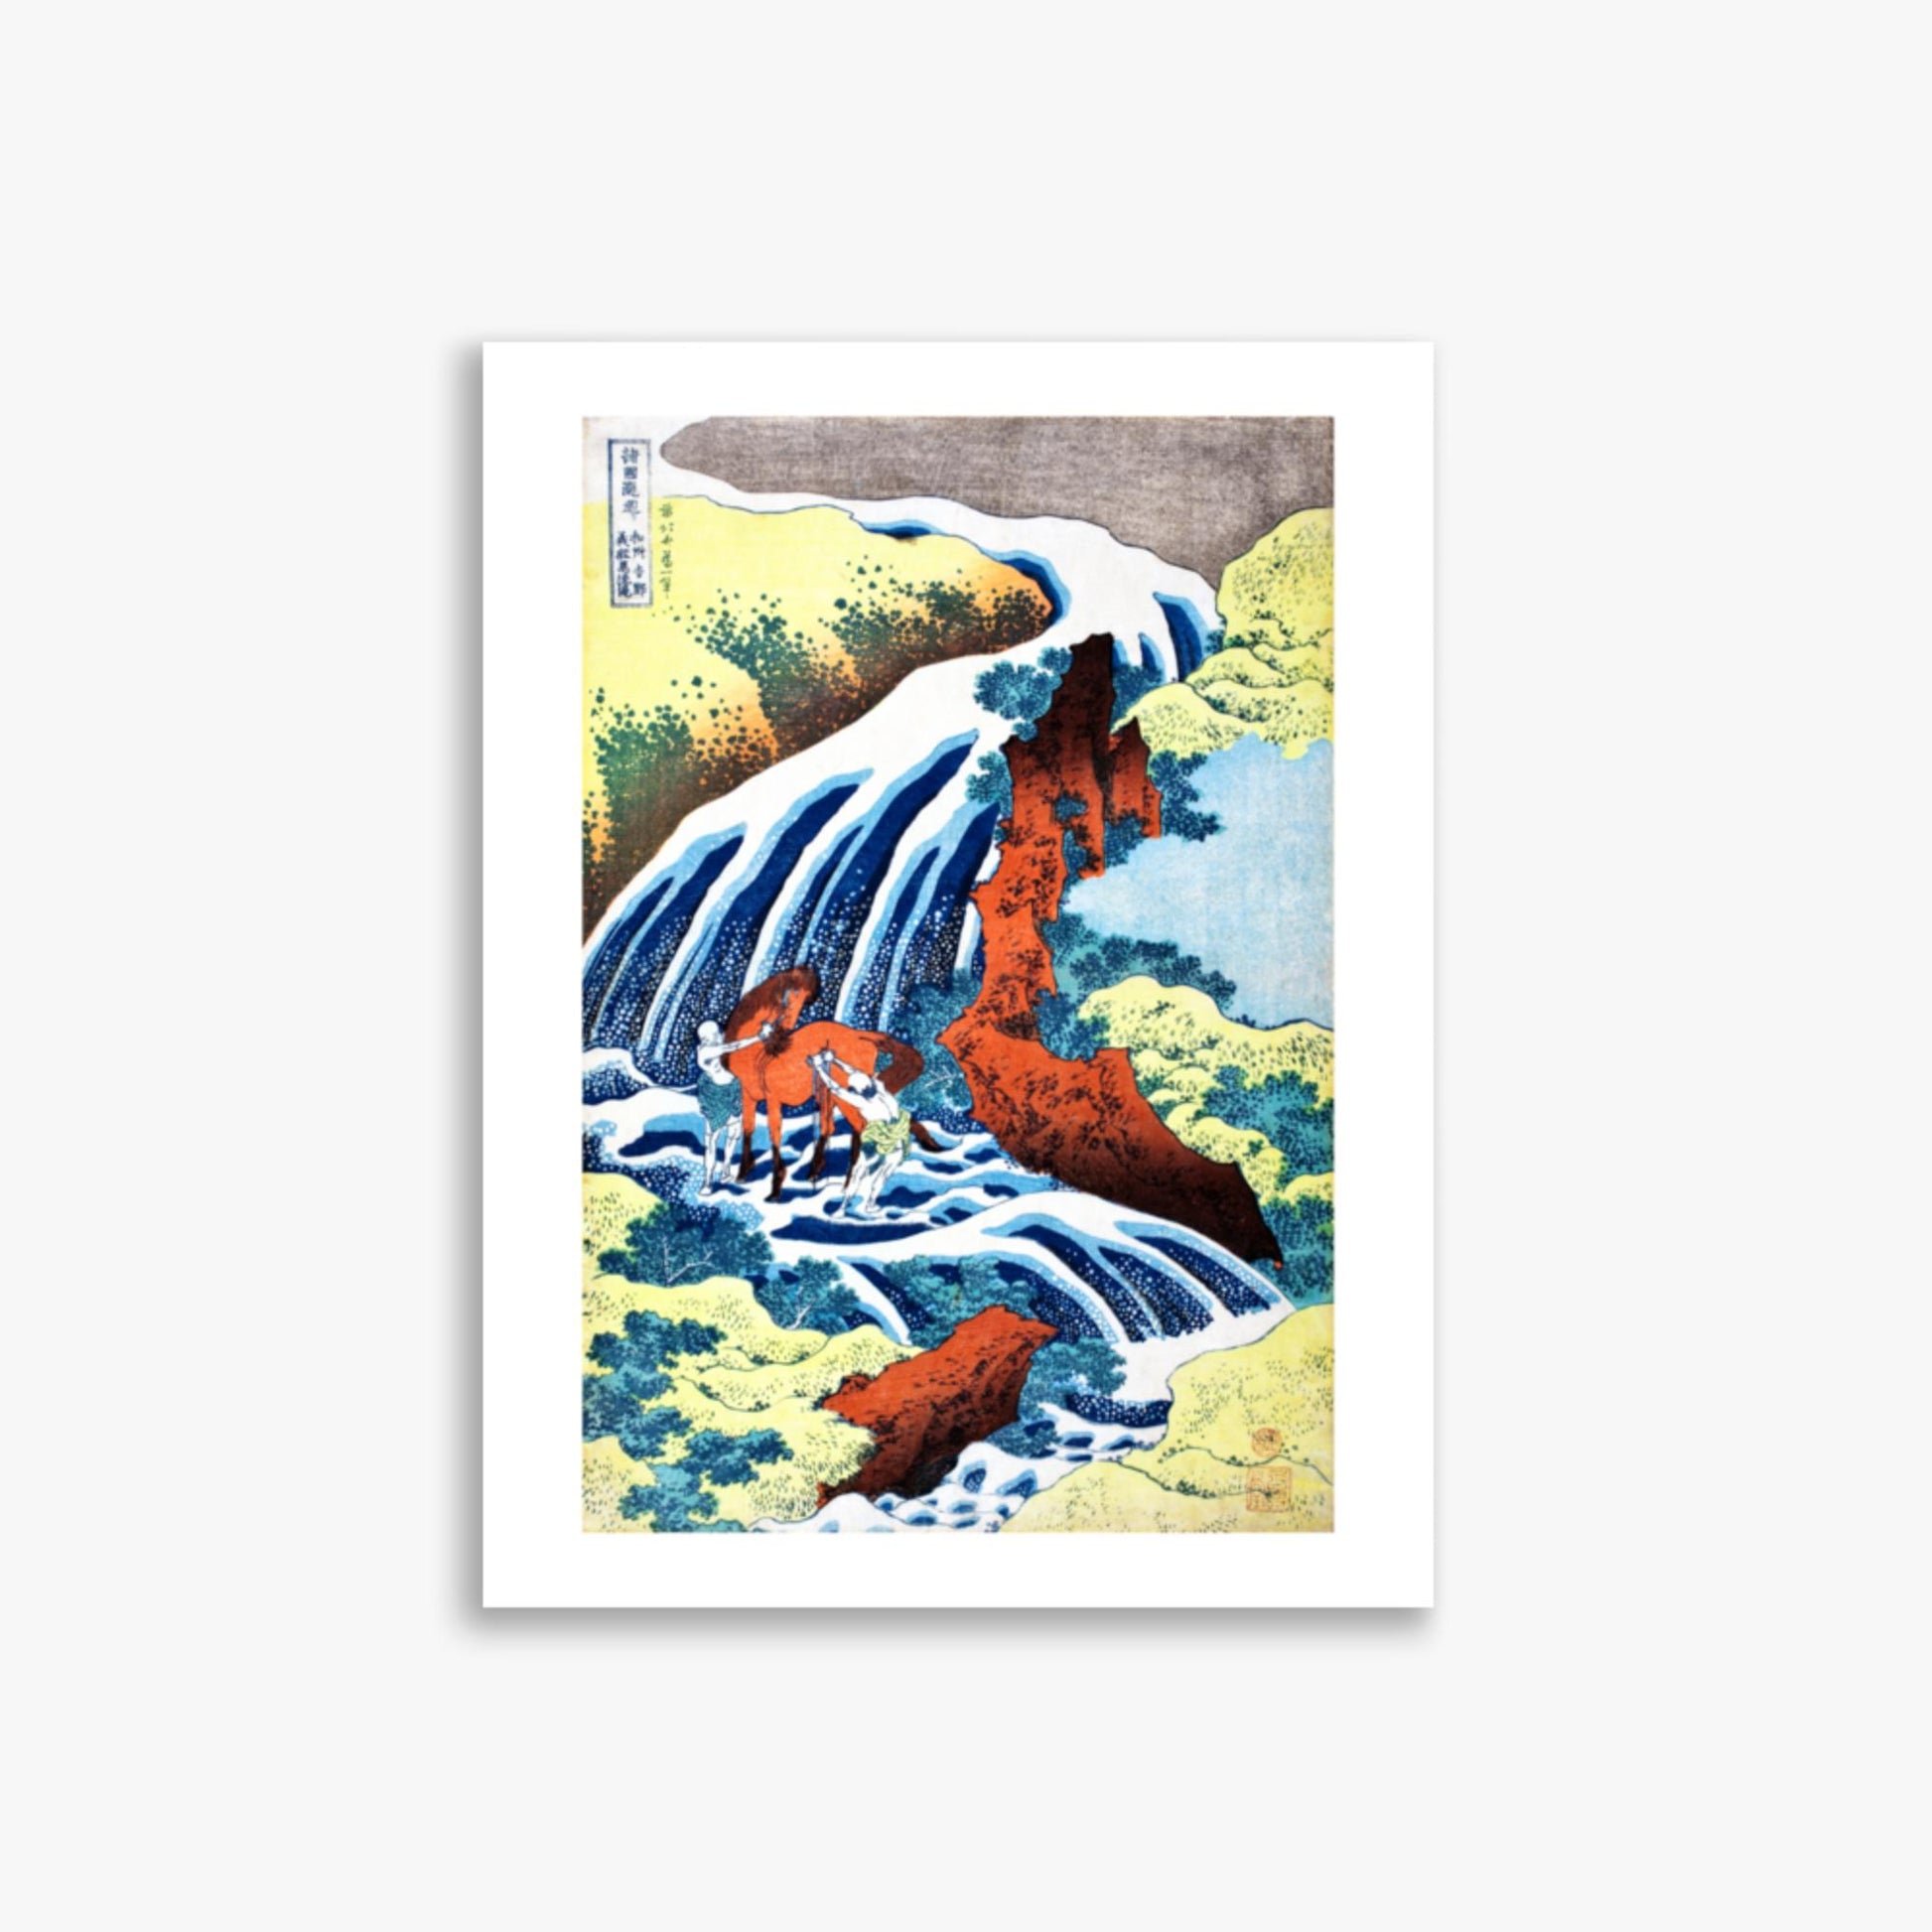 Katsushika Hokusai - The Yoshitsune Horse-Washing Falls at Yoshino, Izumi Province 30x40 cm Poster